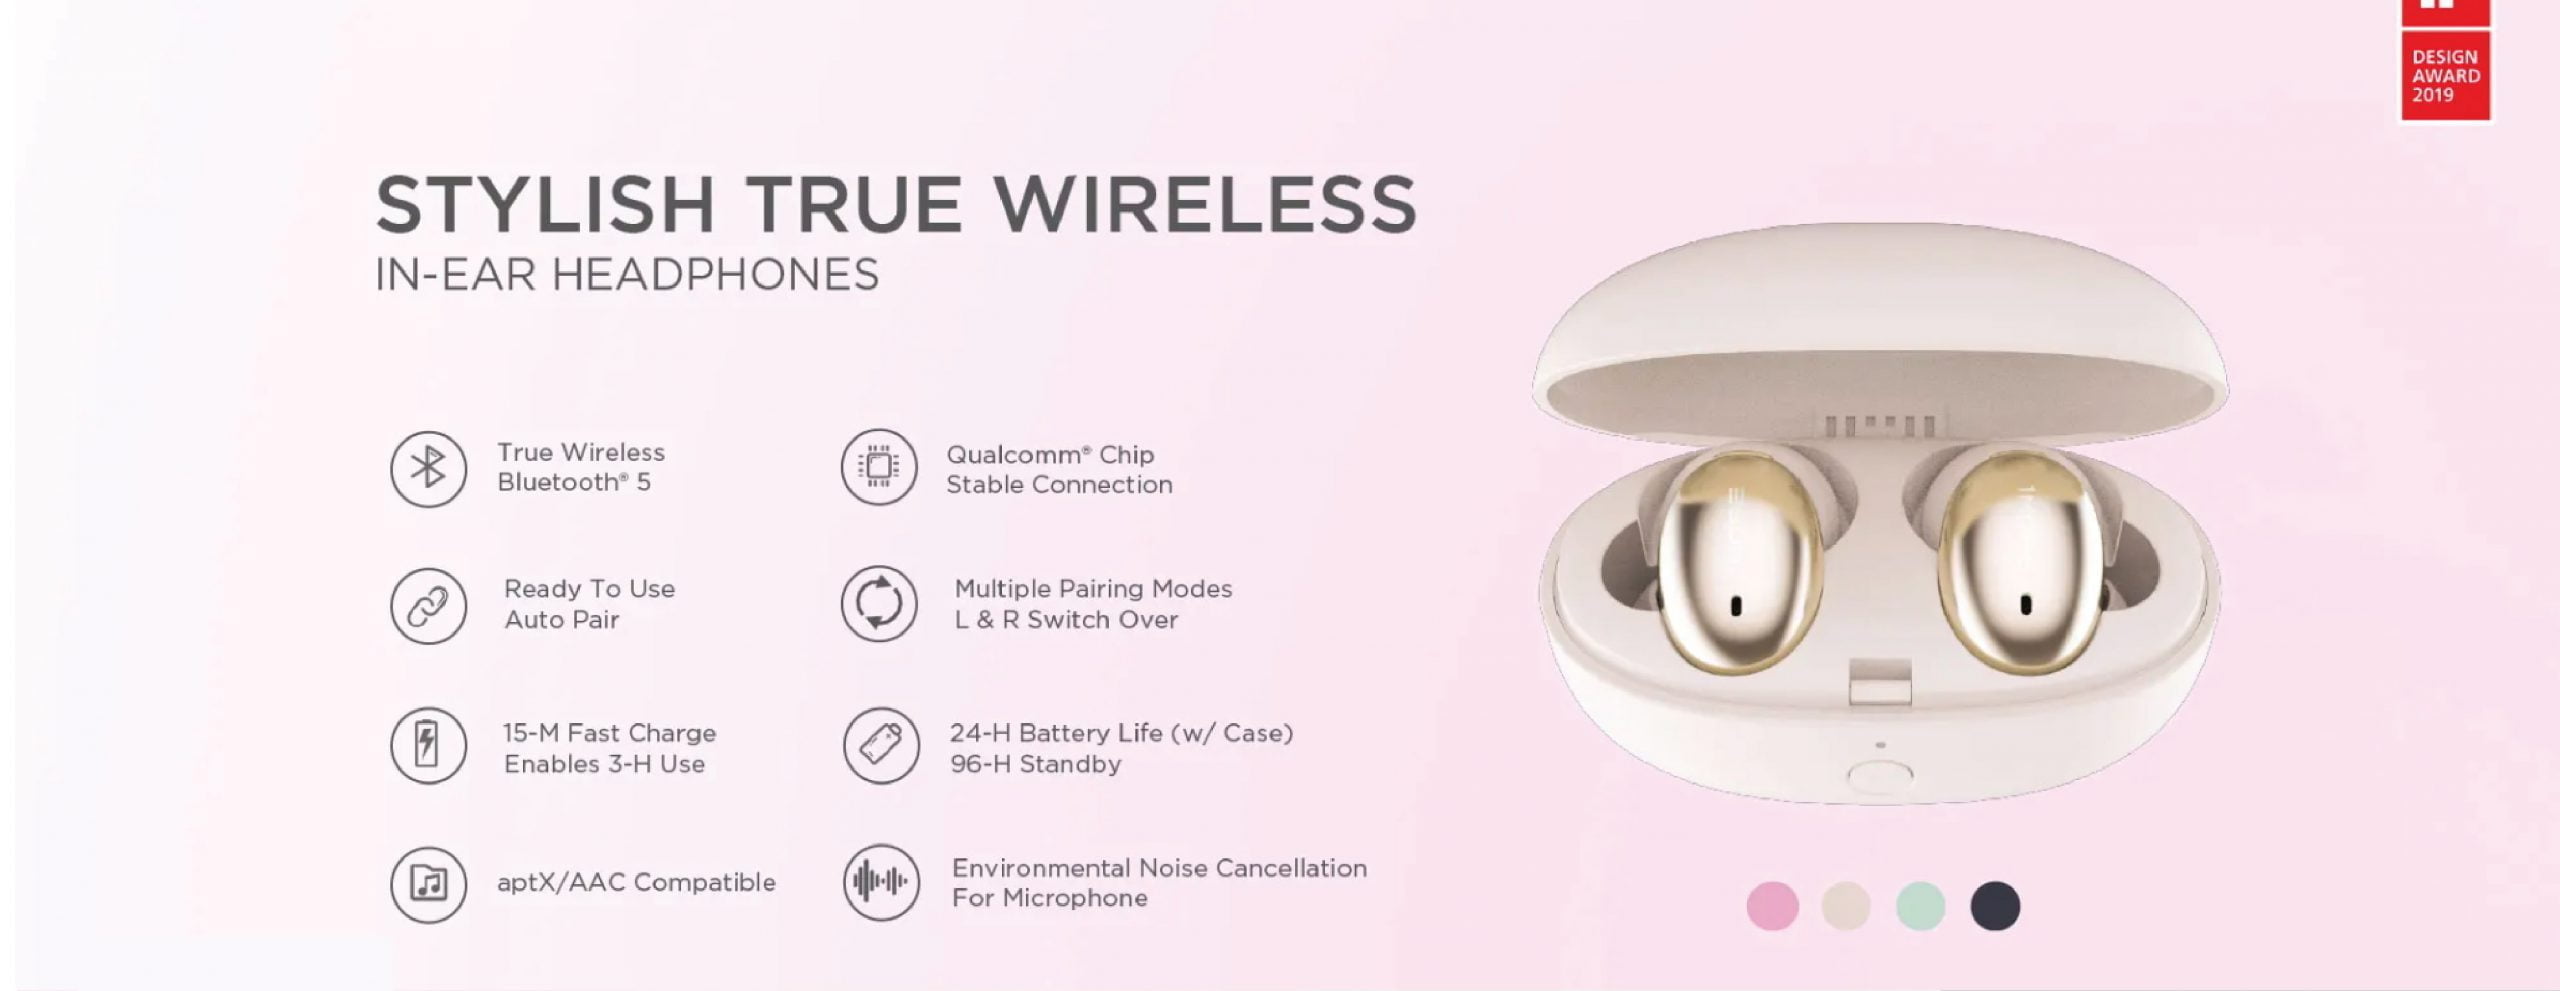 Www 01 Scaled Xiaomi 1More Stylish True Wireless Earbuds – Pink (Design Awards 2019) 1More Stylish True Wireless Earbuds – Pink (Design Awards 2019)